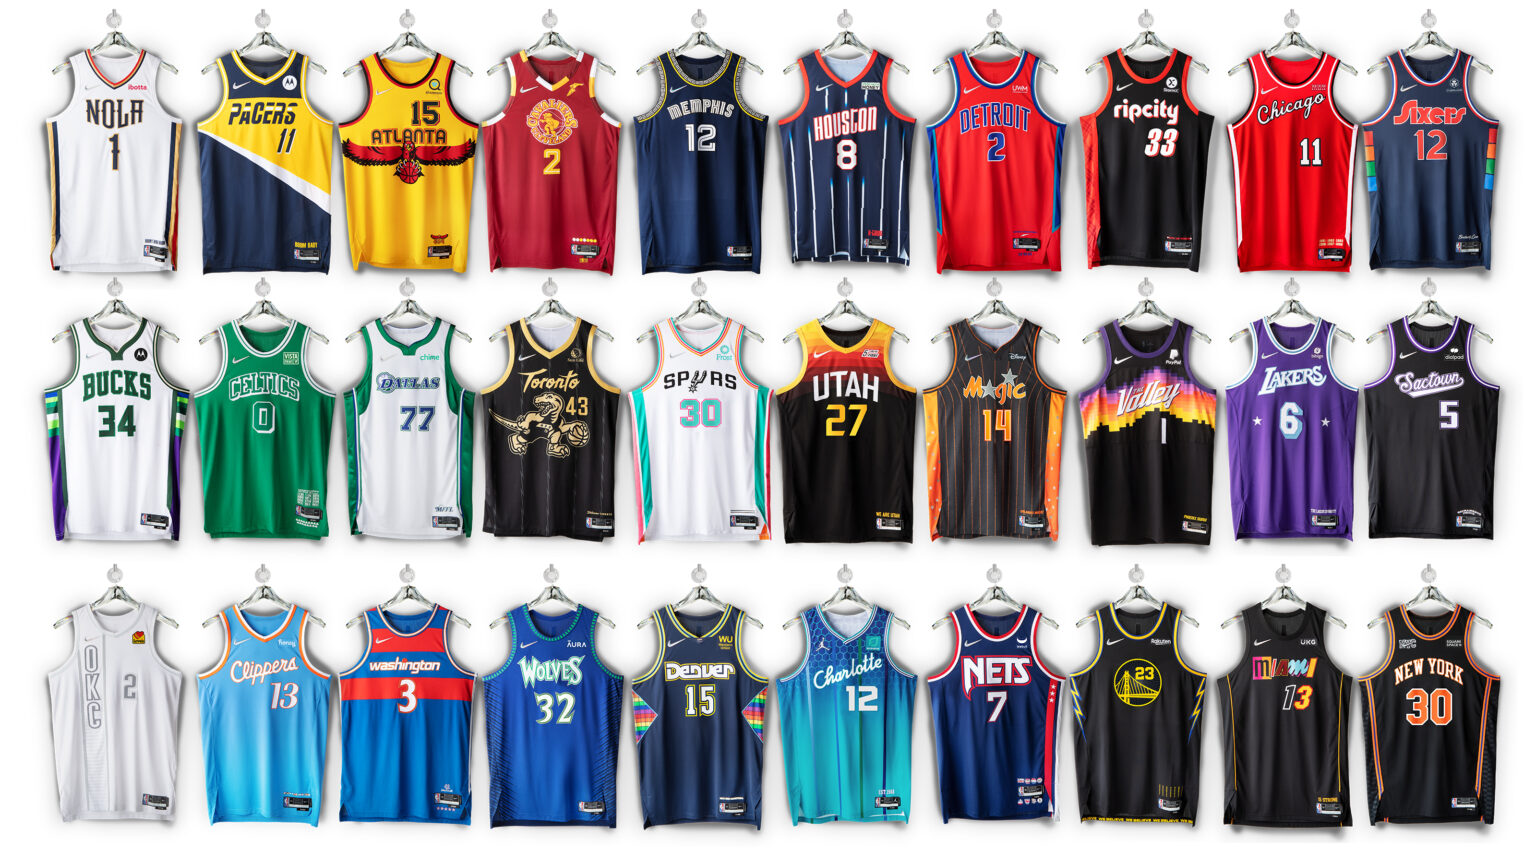 Maillots City NBA 20212022 tous les maillots dévoilés par la NBA